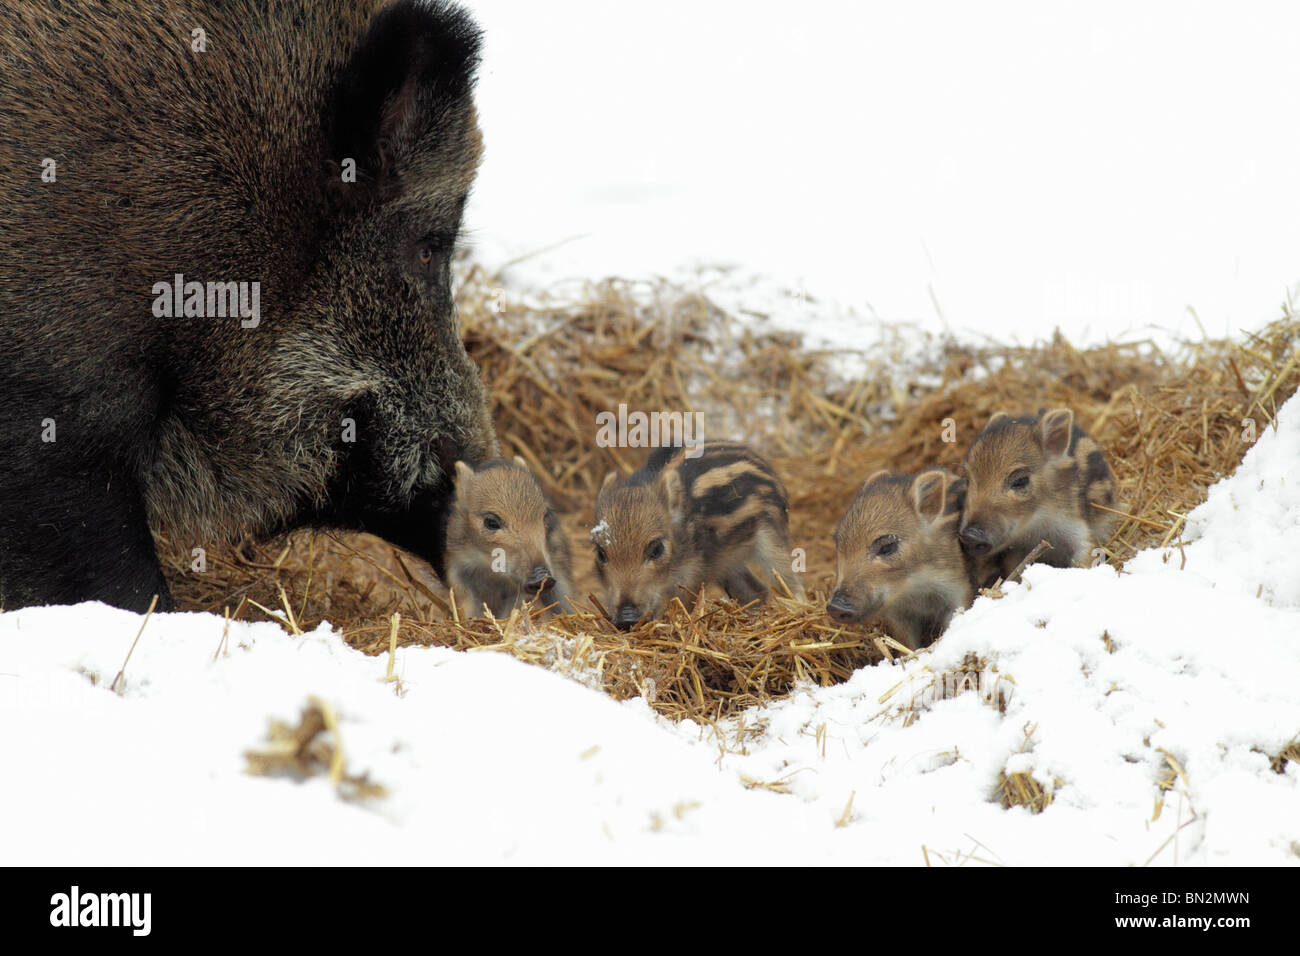 Européen de porc ou de sanglier (Sus scrofa) sow avec bébé nid de paille en porcelets, hiver, Allemagne Banque D'Images